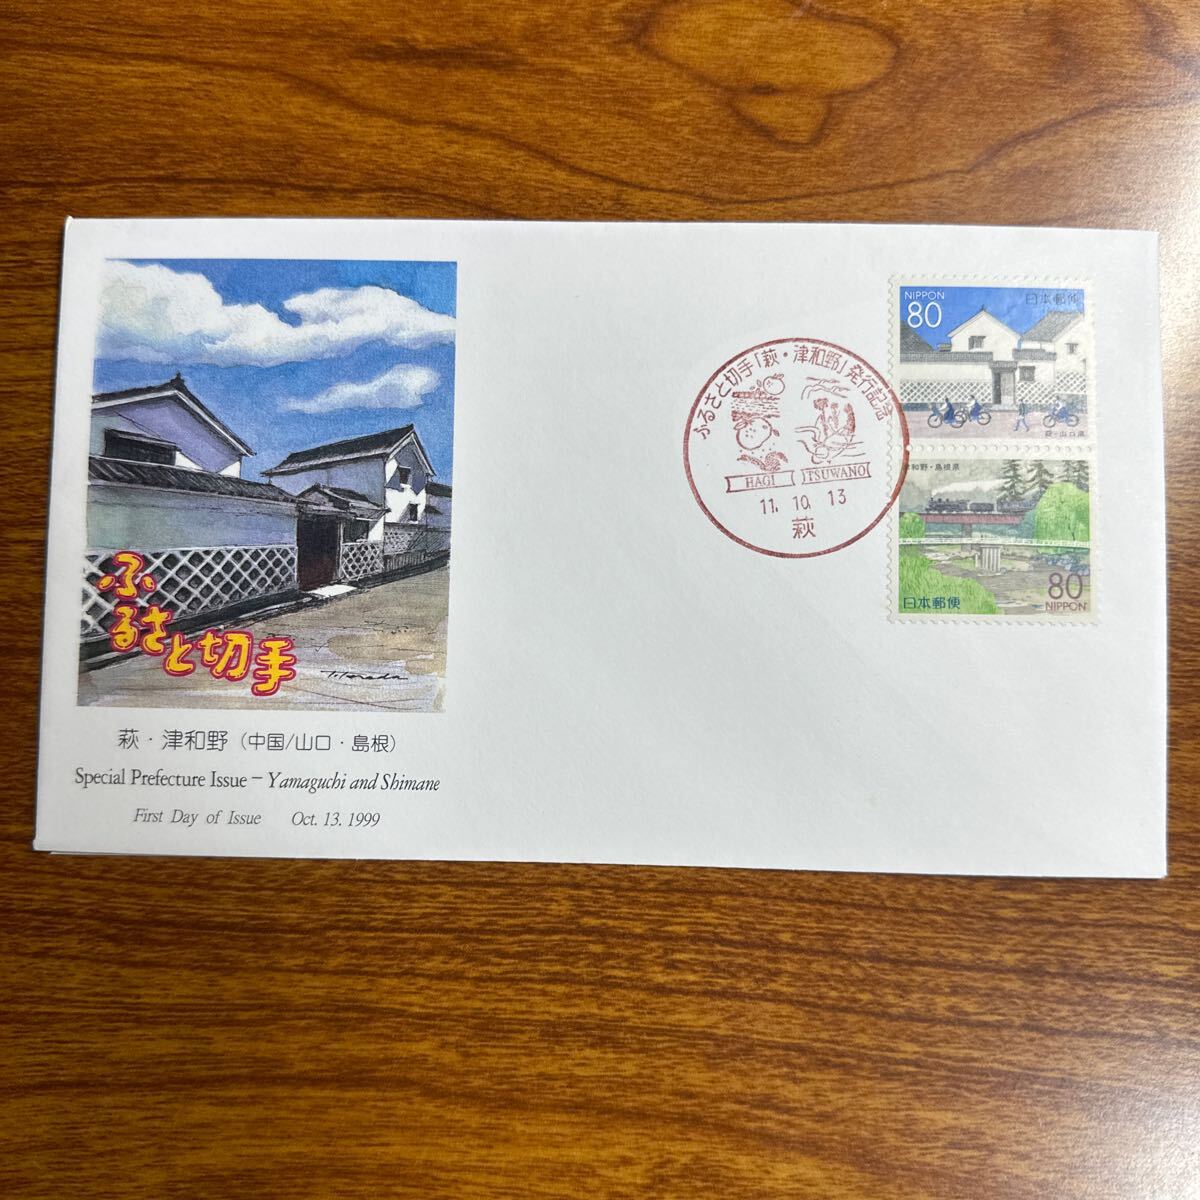  First Day Cover марки Furusato * Hagi * Цу мир .( China * Yamaguchi, Shimane ) 1999 год выпуск память печать 